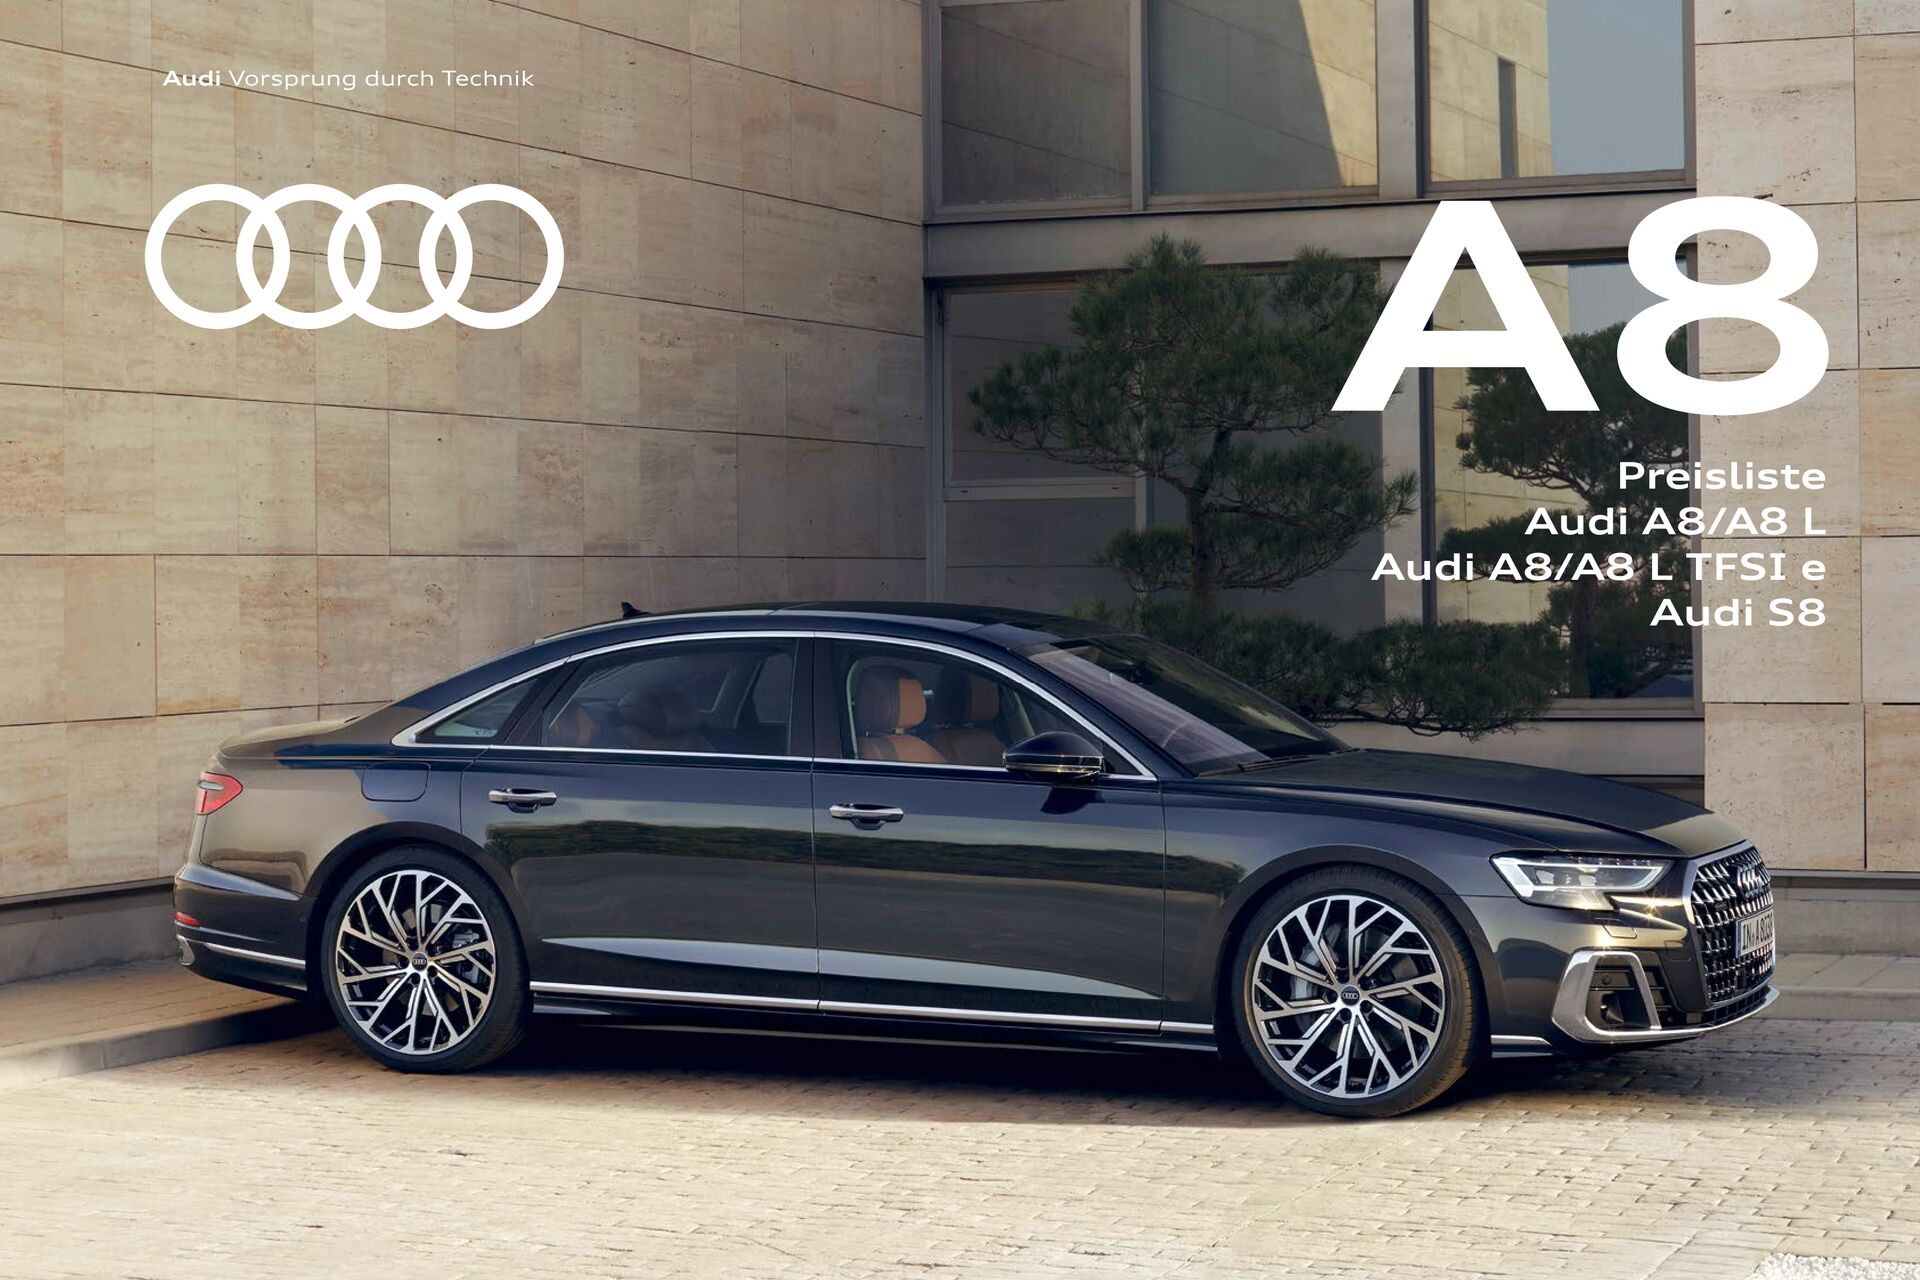 Preisliste Audi A8/A8 L / Audi A8/A8 L TFSI e / Audi S8